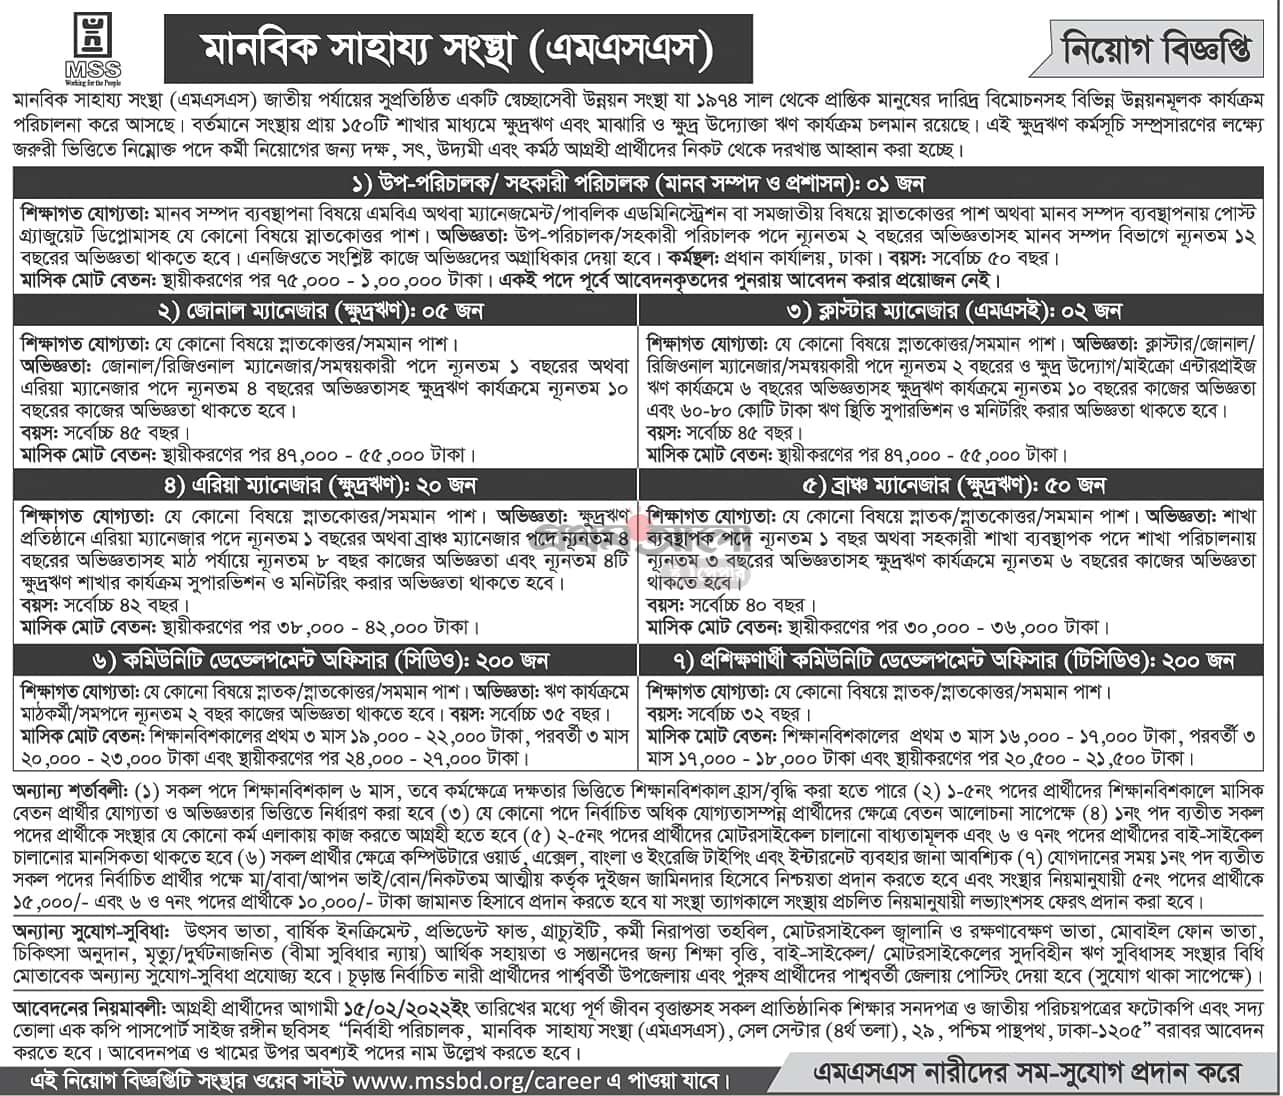 Manabik Shahajya Sangstha Job Circular image 2022 